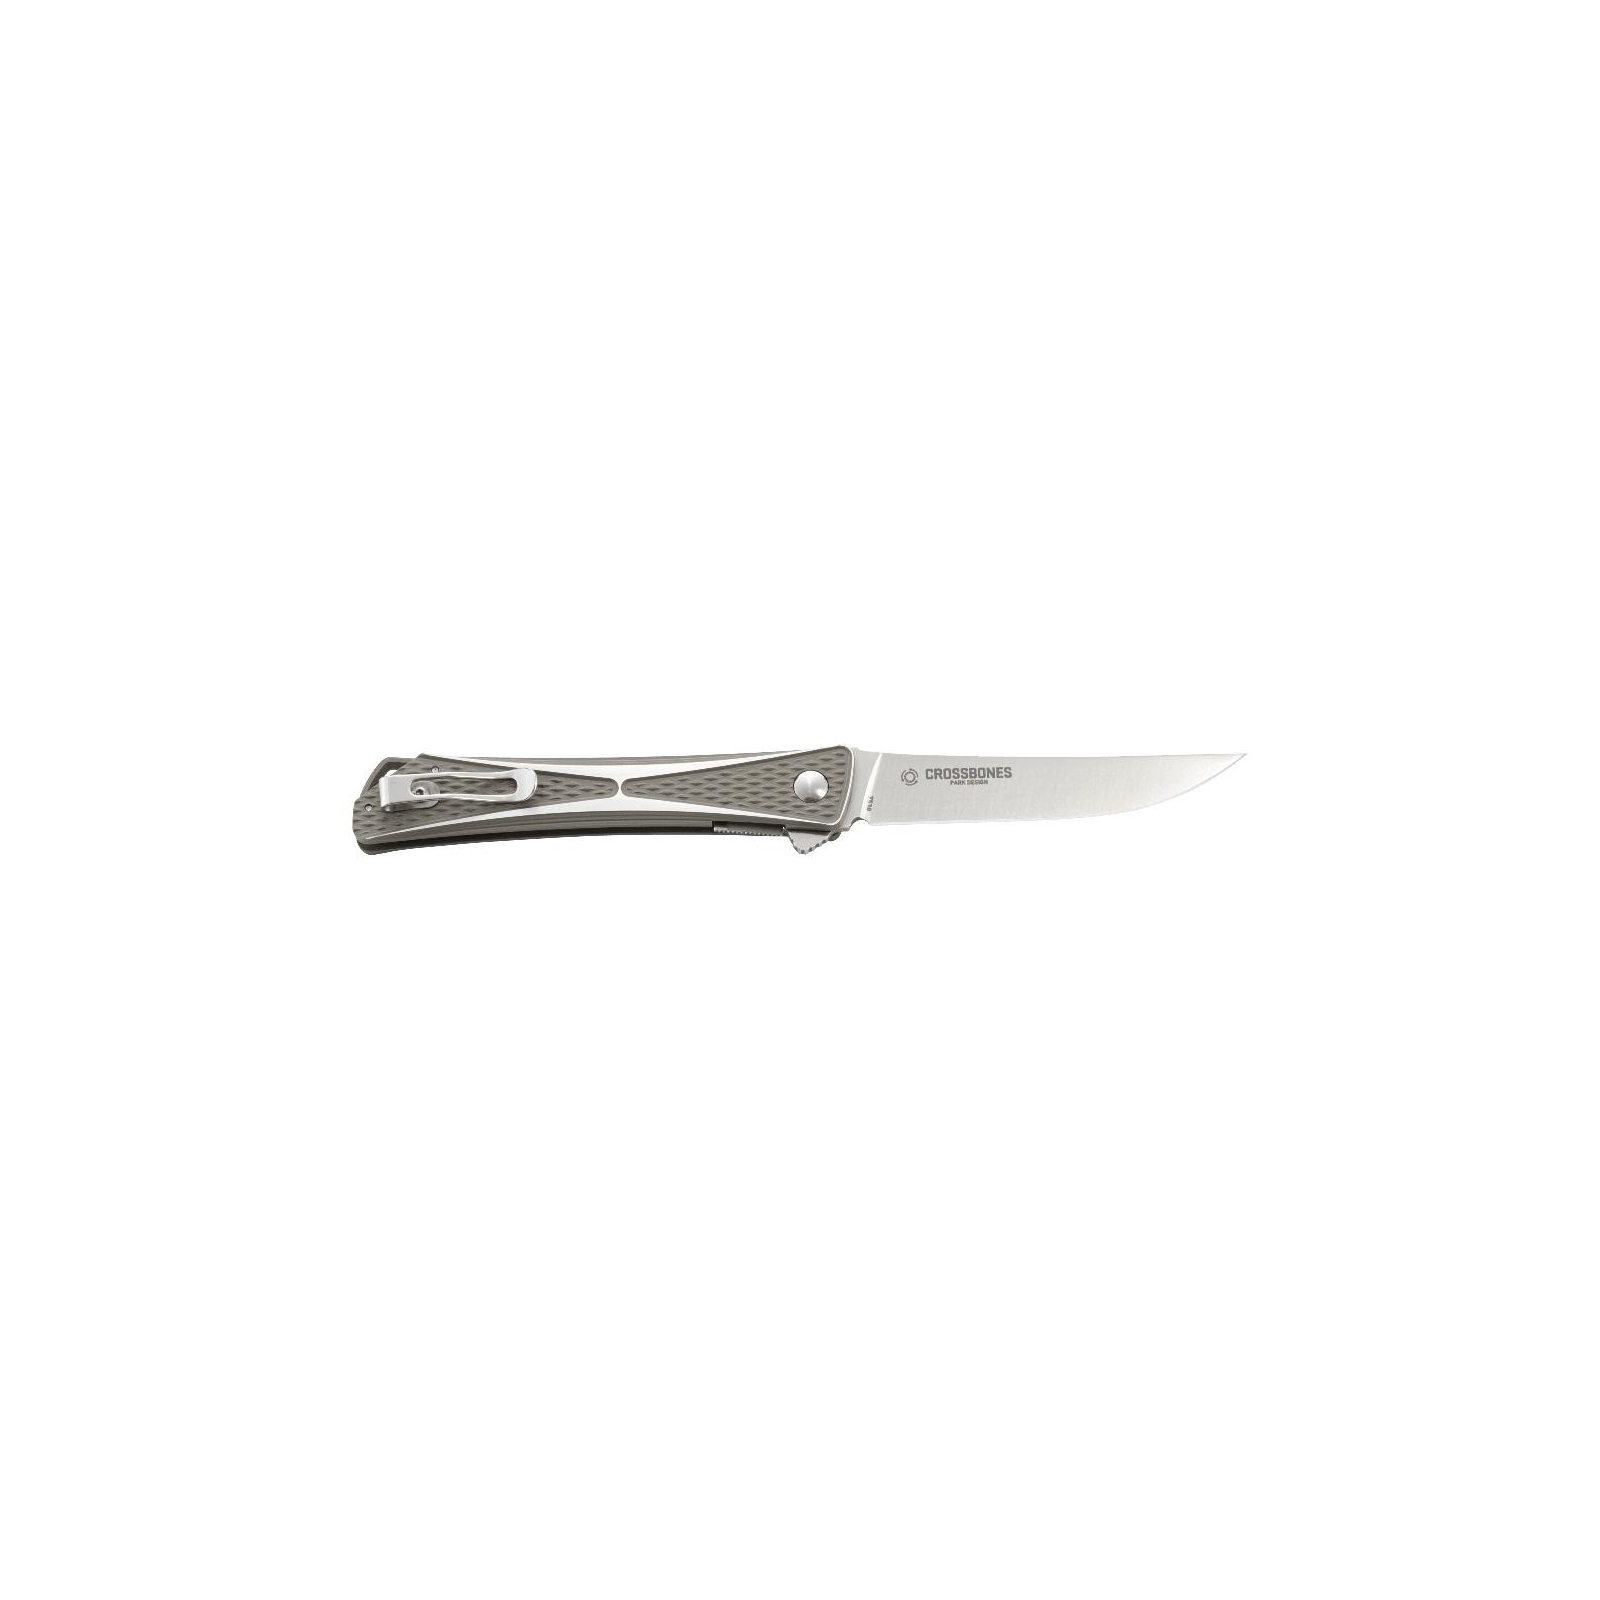 Нож CRKT "Crossbones" (7530) изображение 2